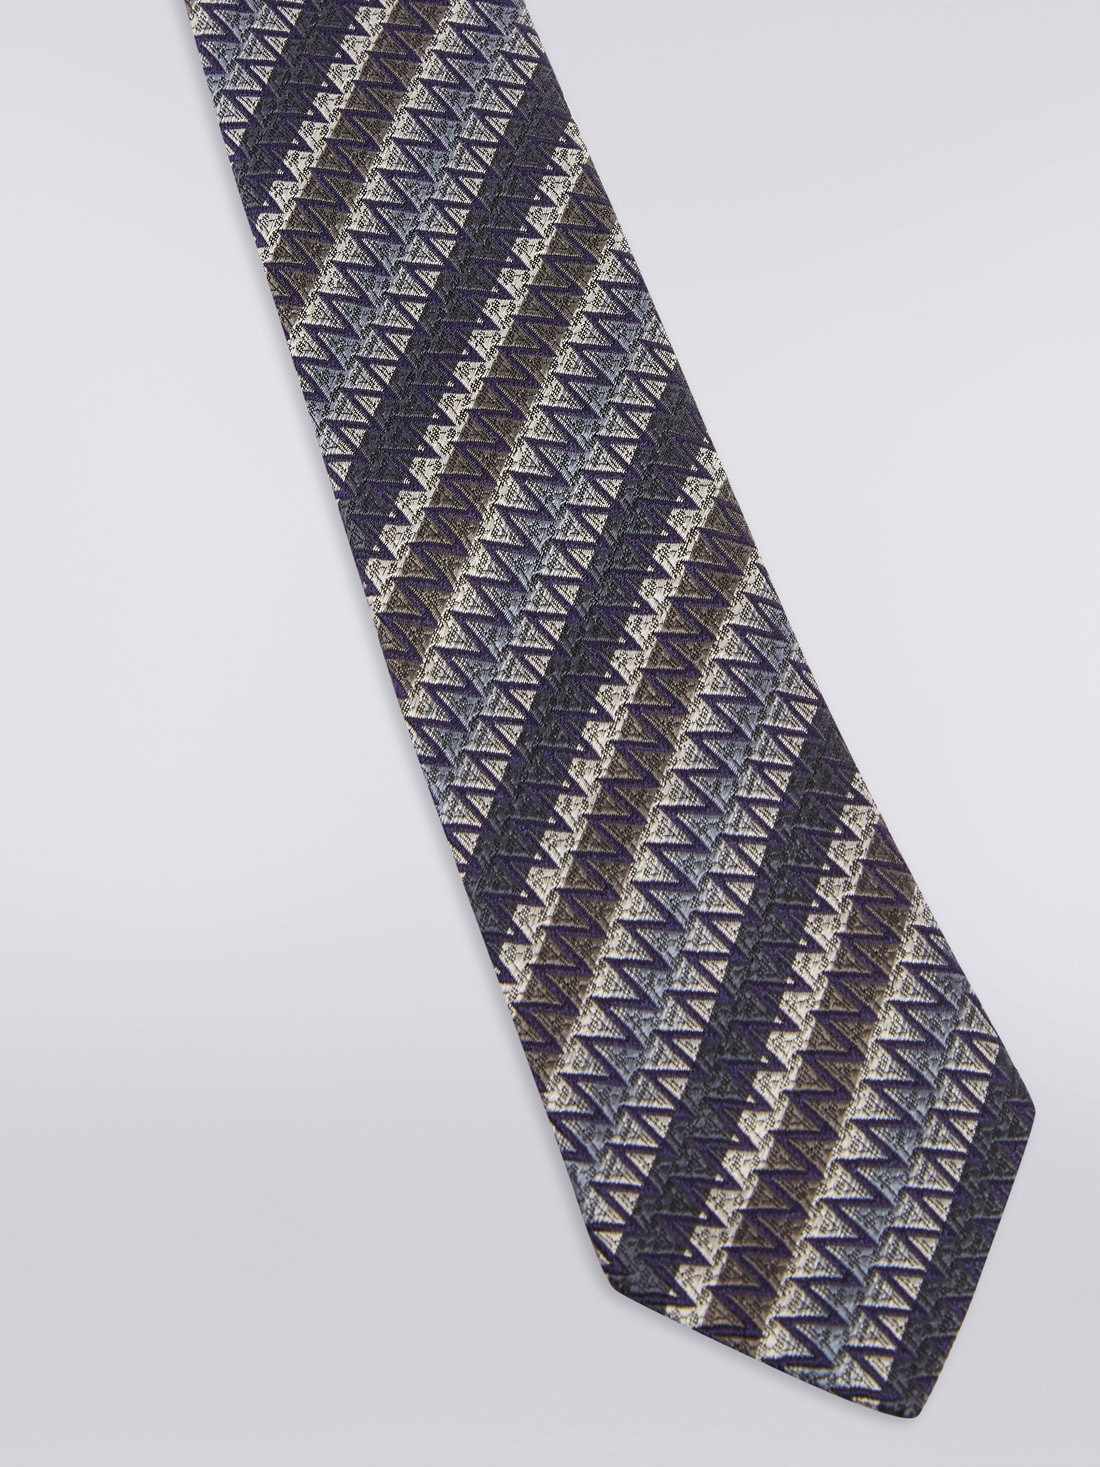 Cravatta in seta con righe oblique e zig zag, Multicolore - 8051575919893 - 1